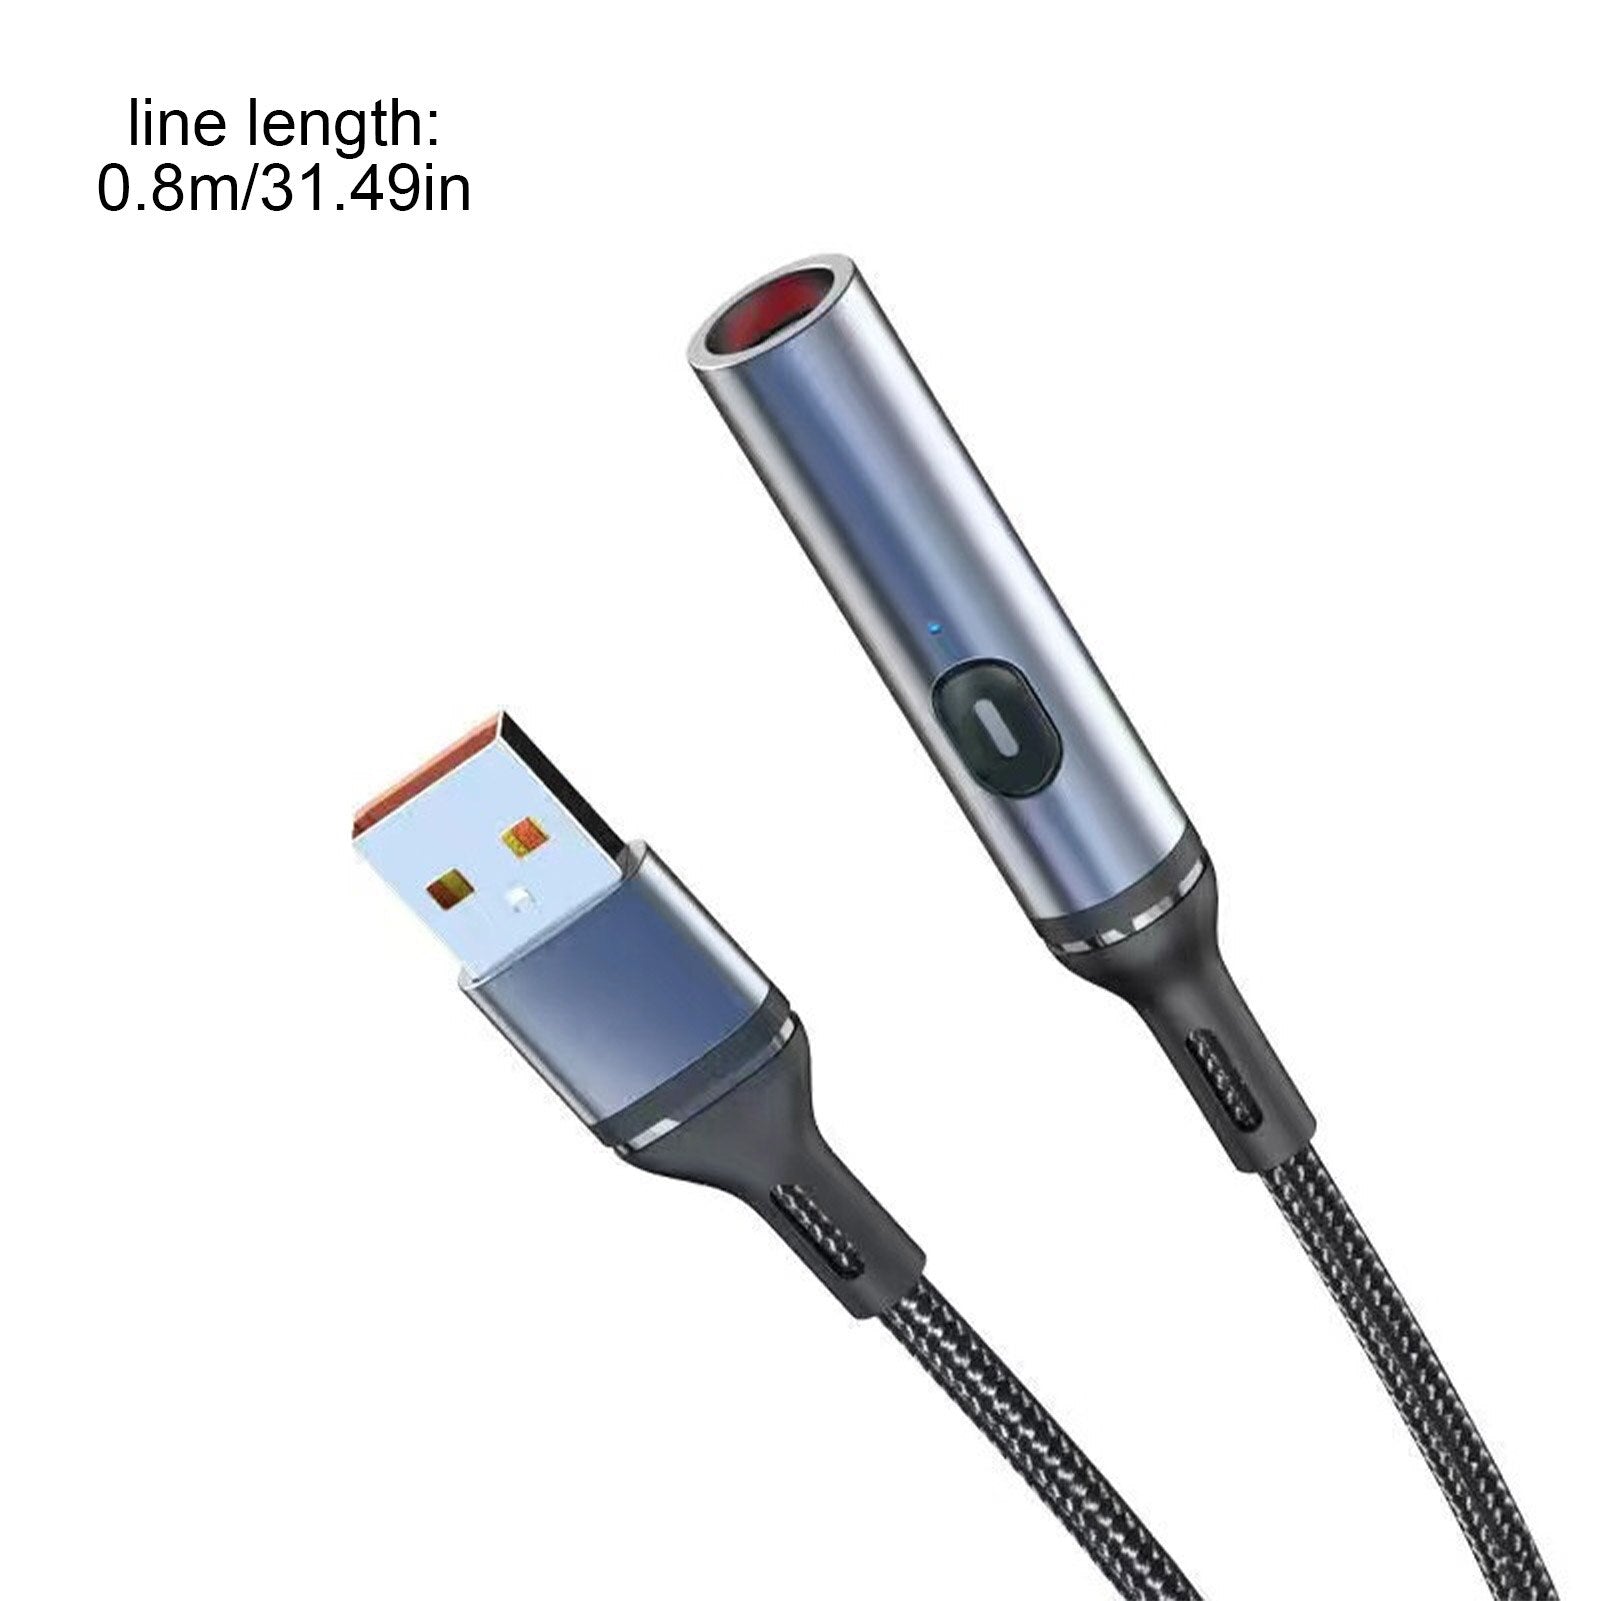 Atongm çoklu şarj kablosu 12V 120W araç çakmak şarj adapterü tip-c cep telefonları için mikro usb bağlantı noktası konnektörleri tabletler